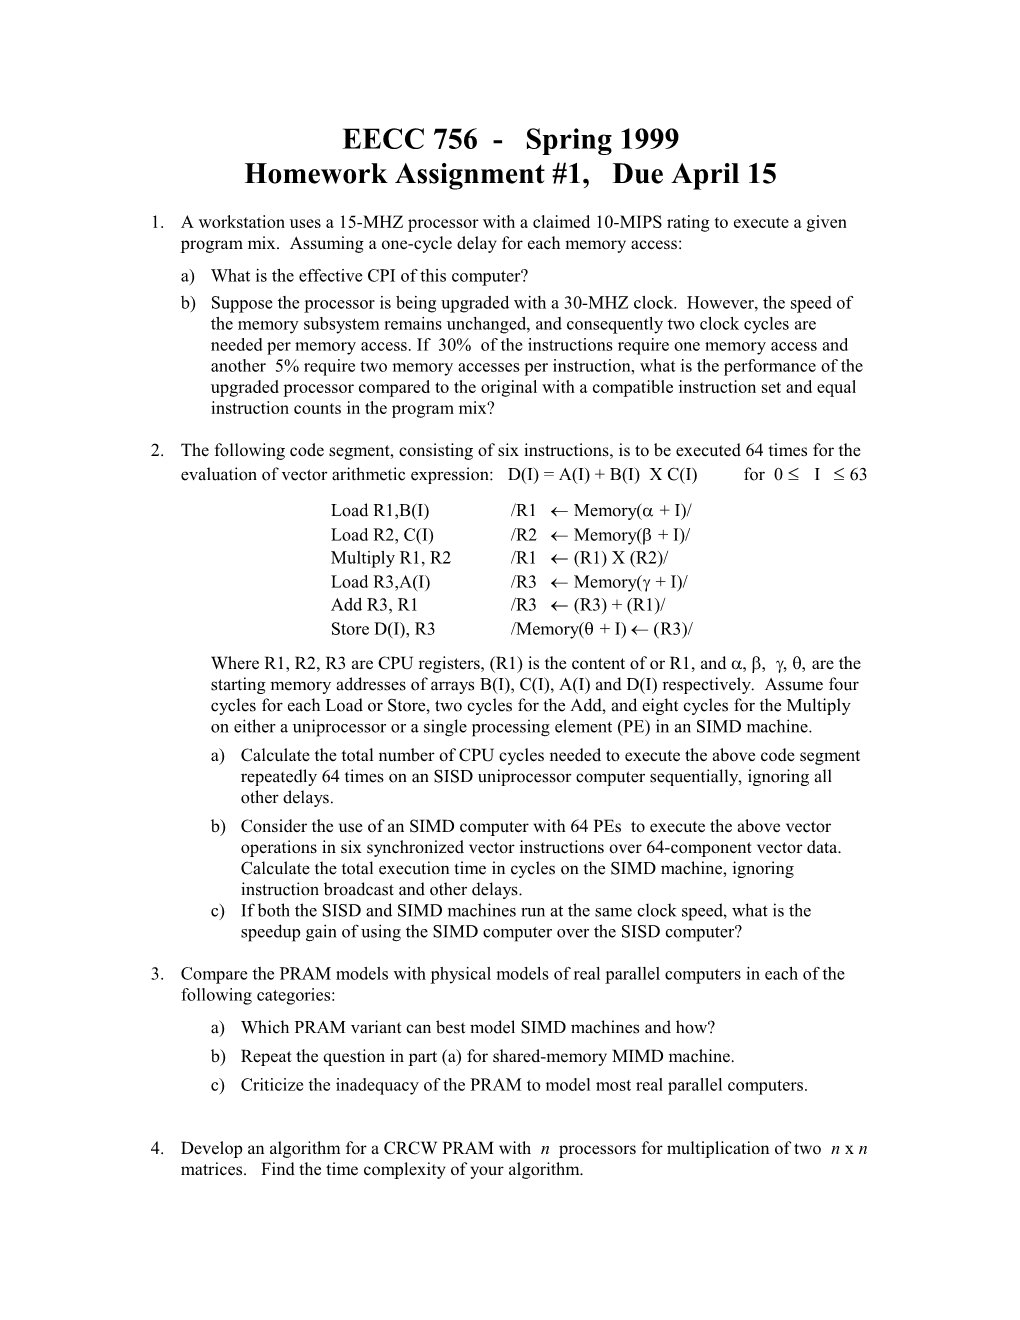 Homework Assignment #1, Due April 15